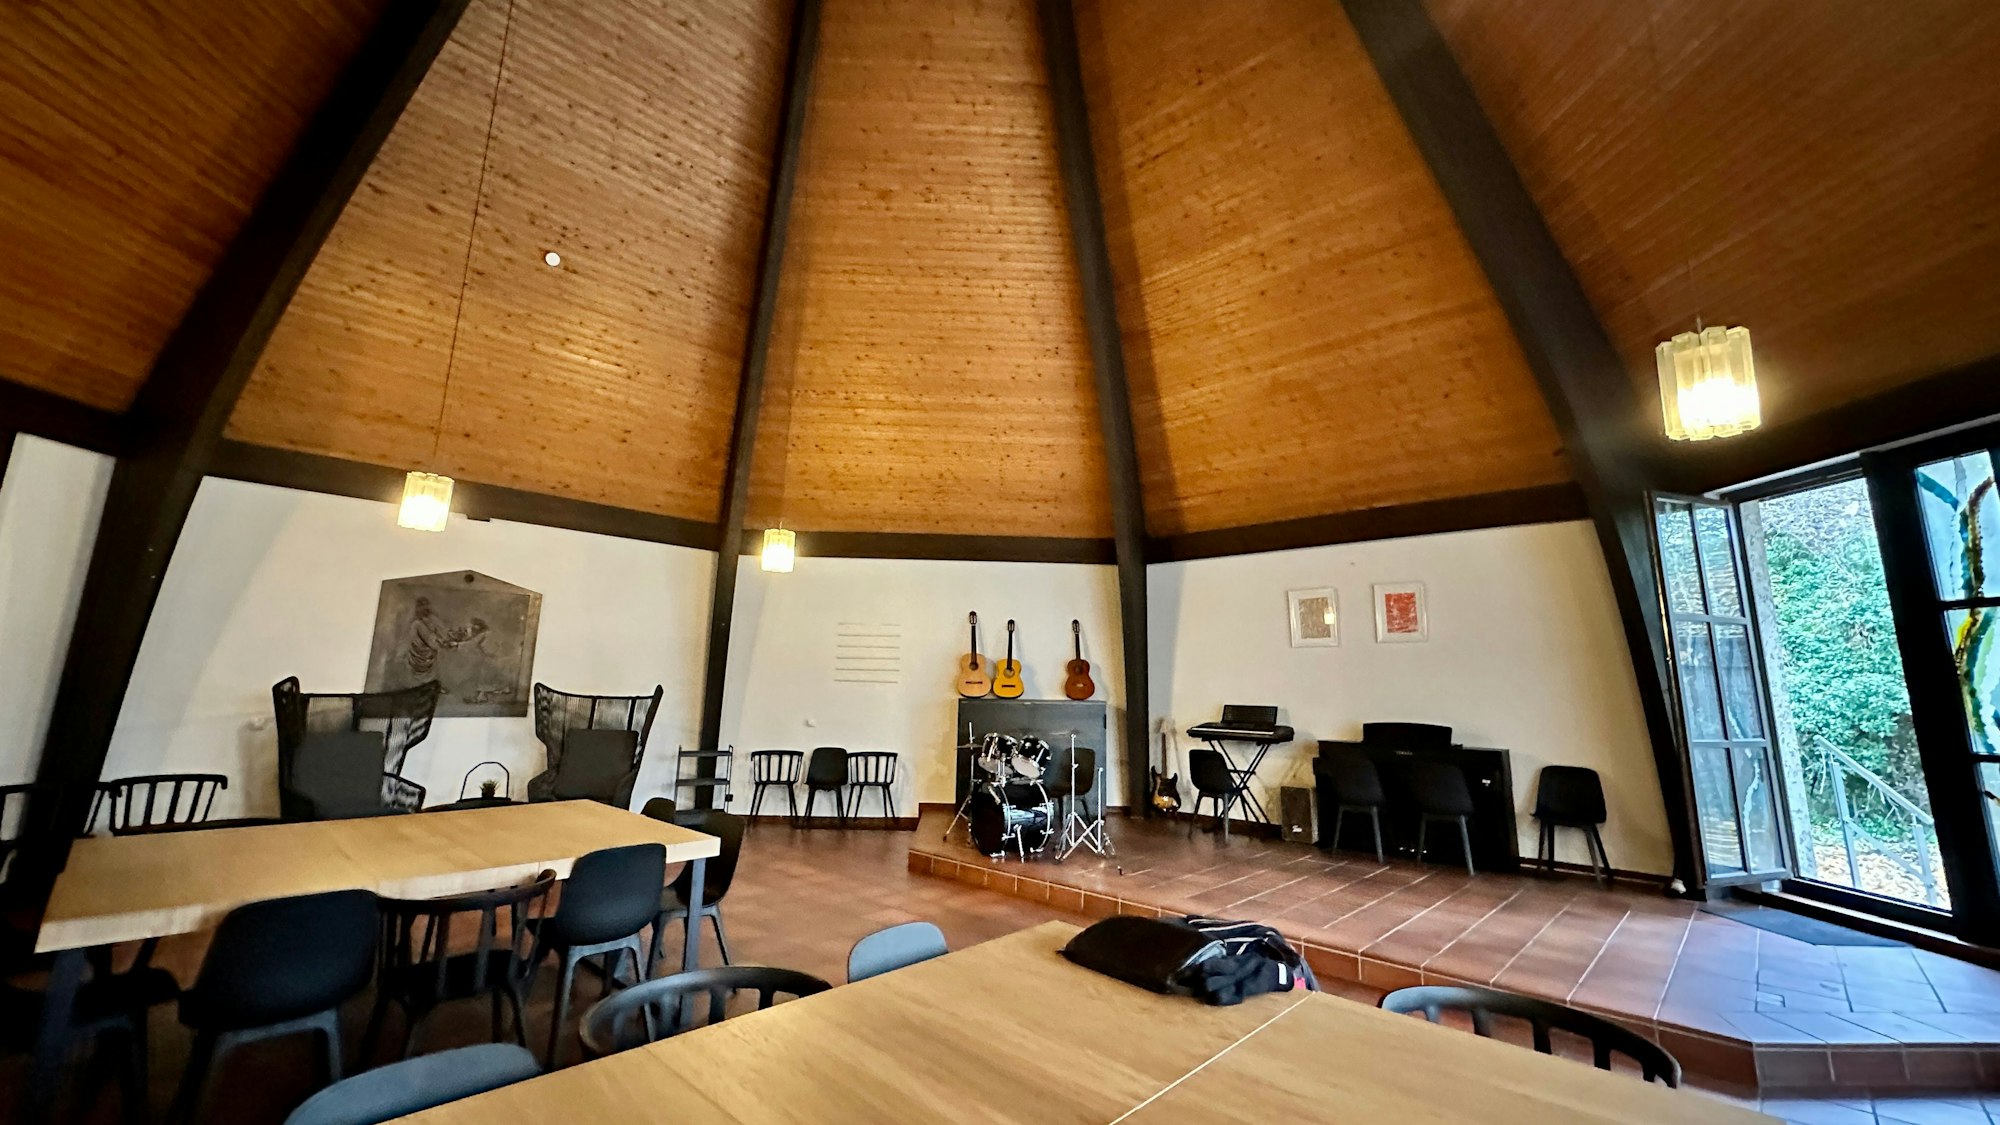 Der luftige Innenraum einer Kirche mit einer hohen holzverkleideten Decke bietet Platz für Tische, Stühle, Gitarren.